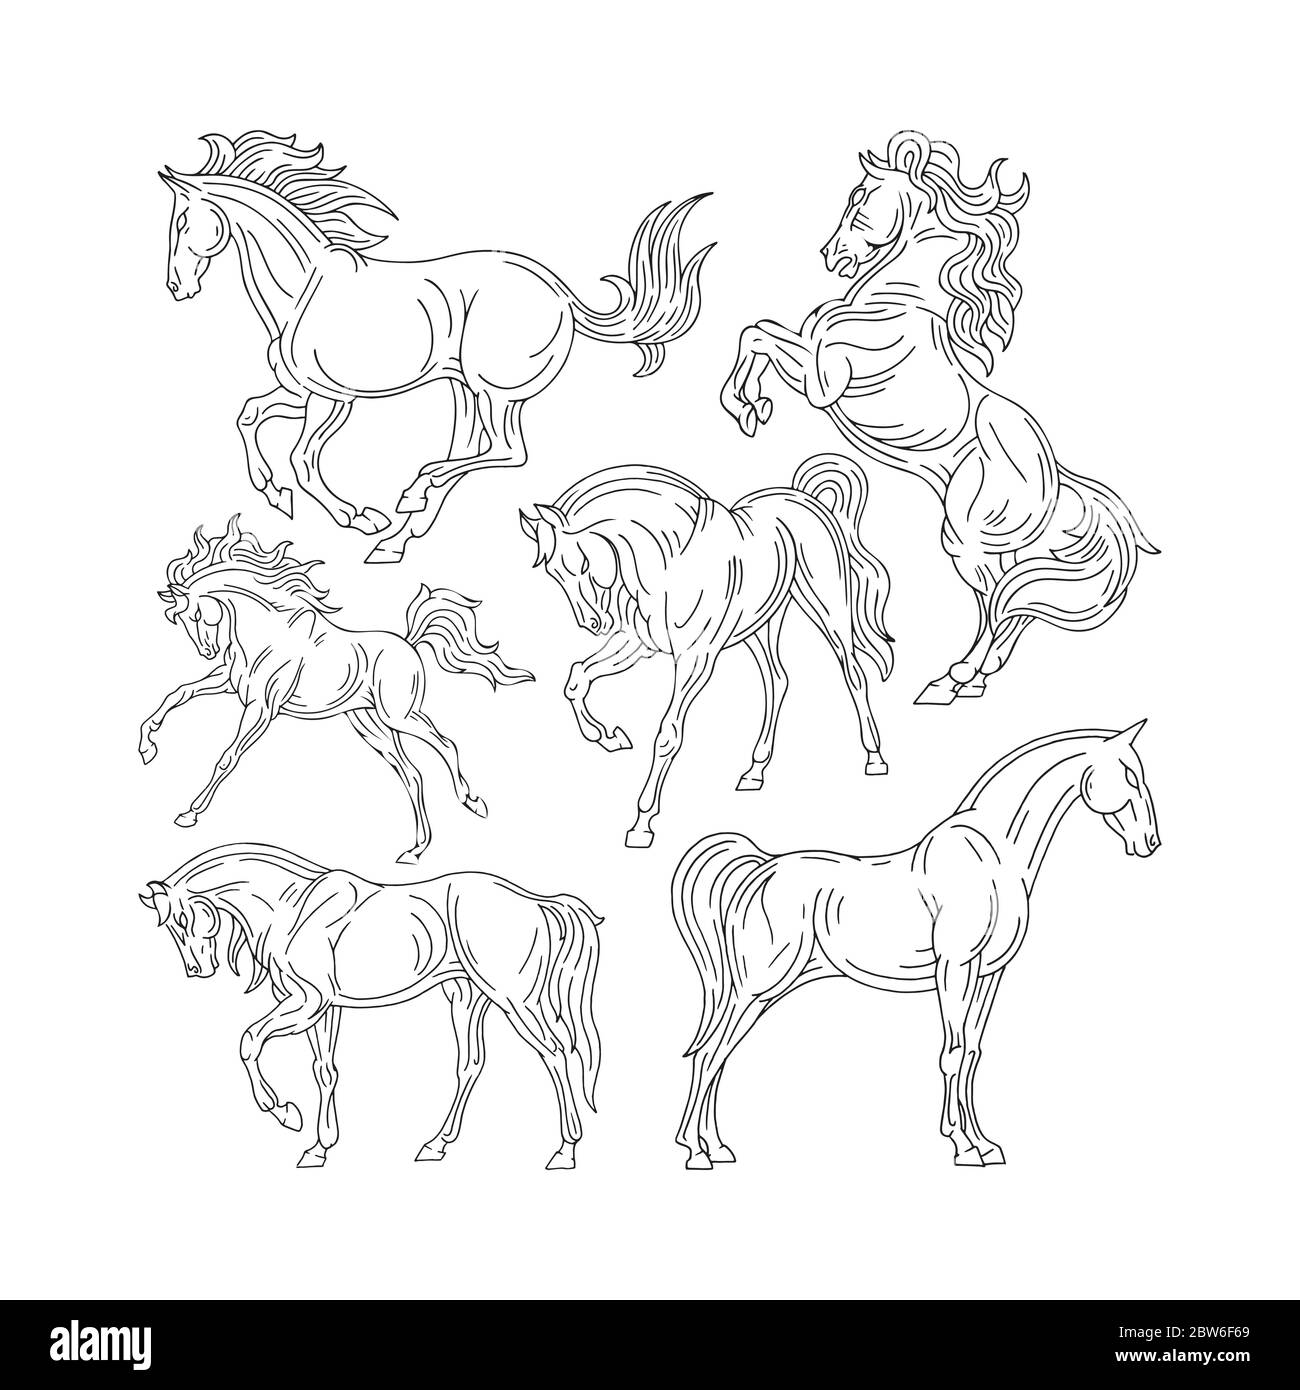 Cheval. Jeu d'illustrations de chevaux dessinées à la main. Esquisser des chevaux de dessin dans différentes poses. Partie de l'ensemble. Illustration de Vecteur